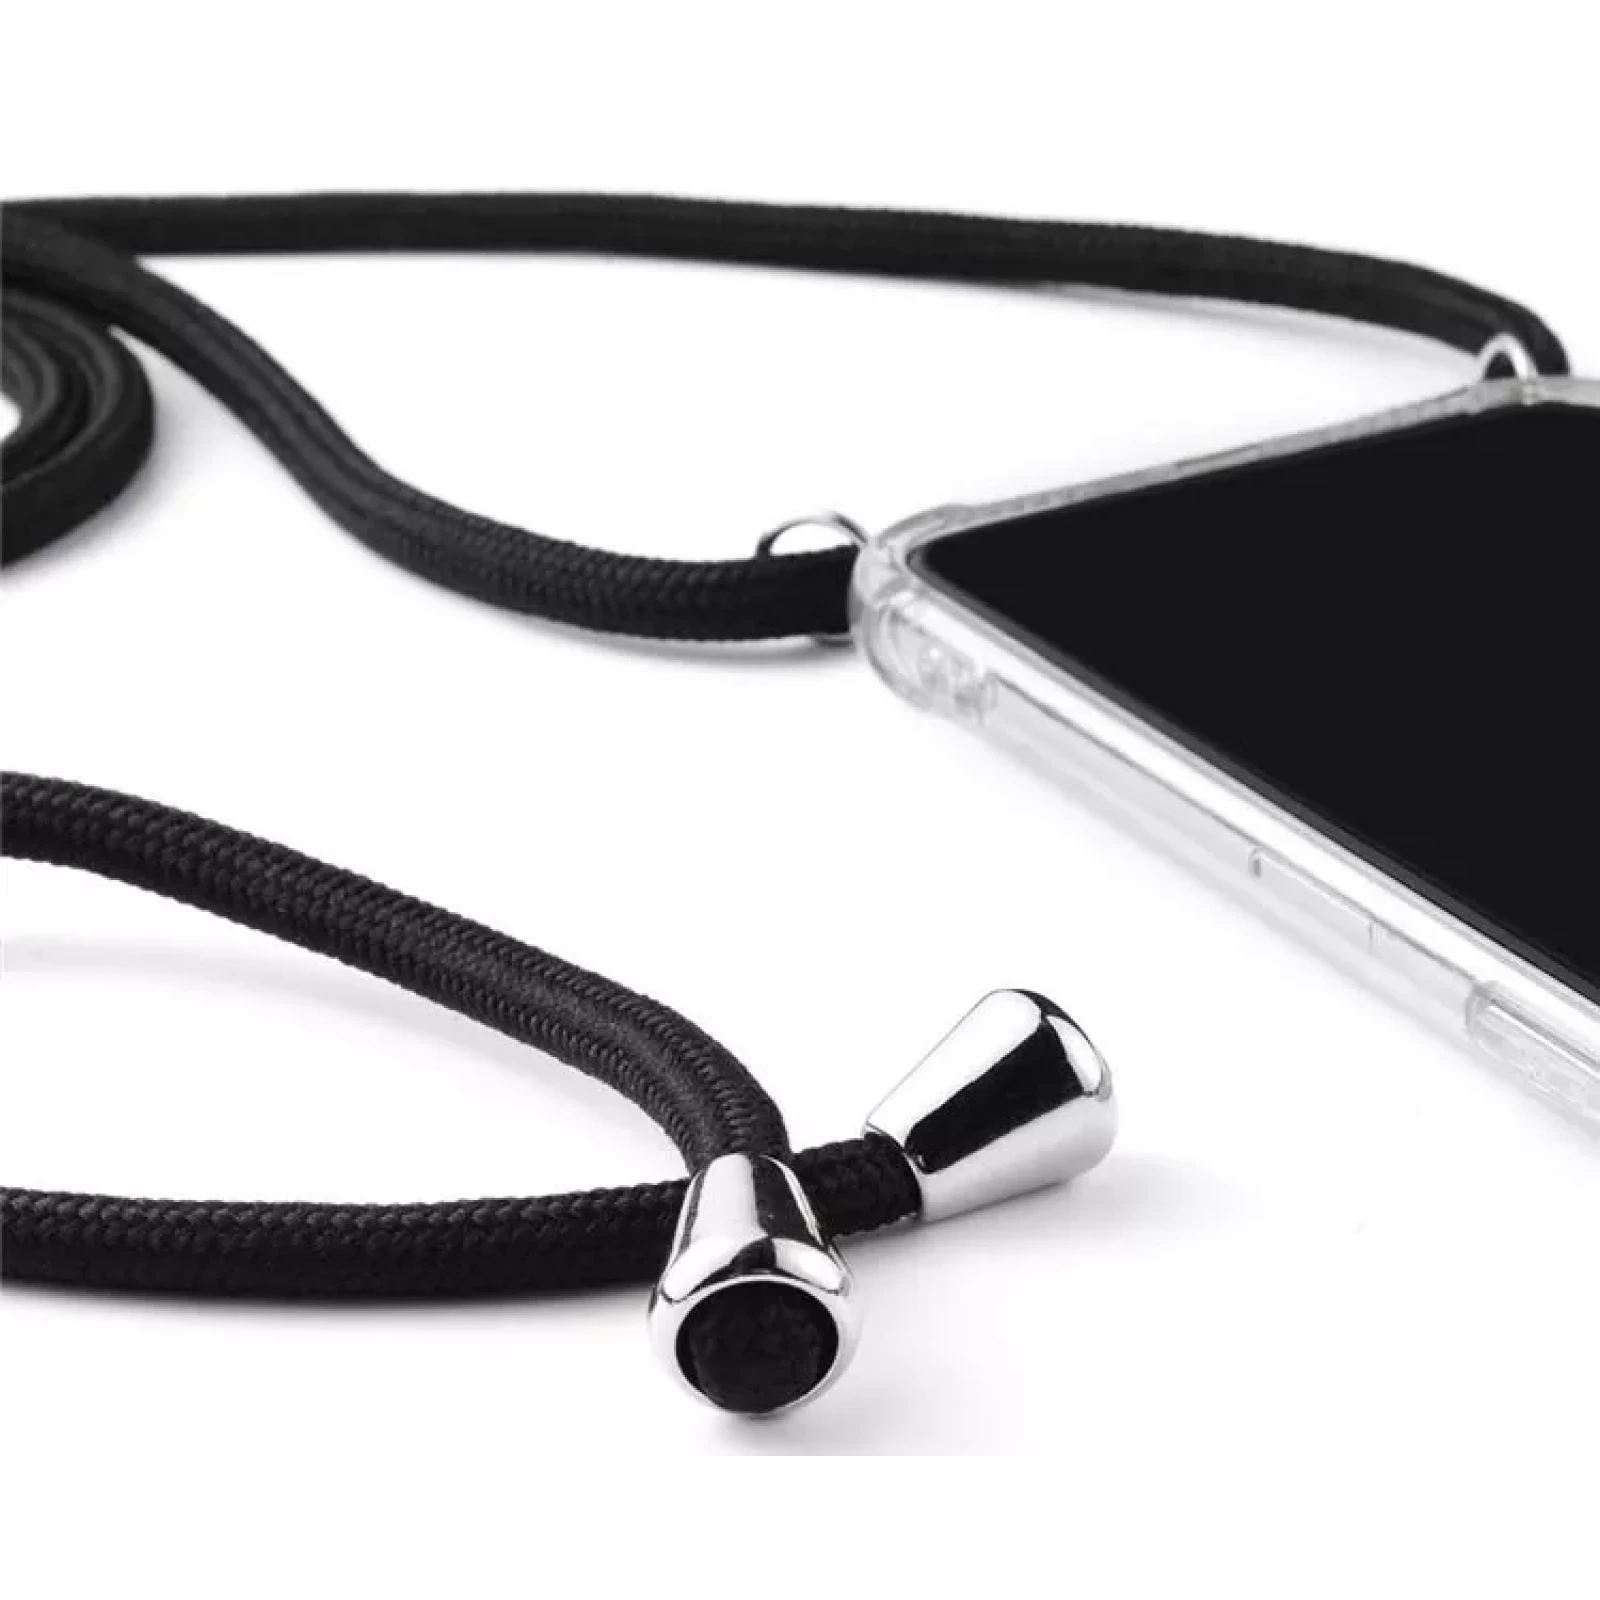 Гръб Airbag soft tpu с  черна връзка за Iphone 13 Pro Max - Прозрачен